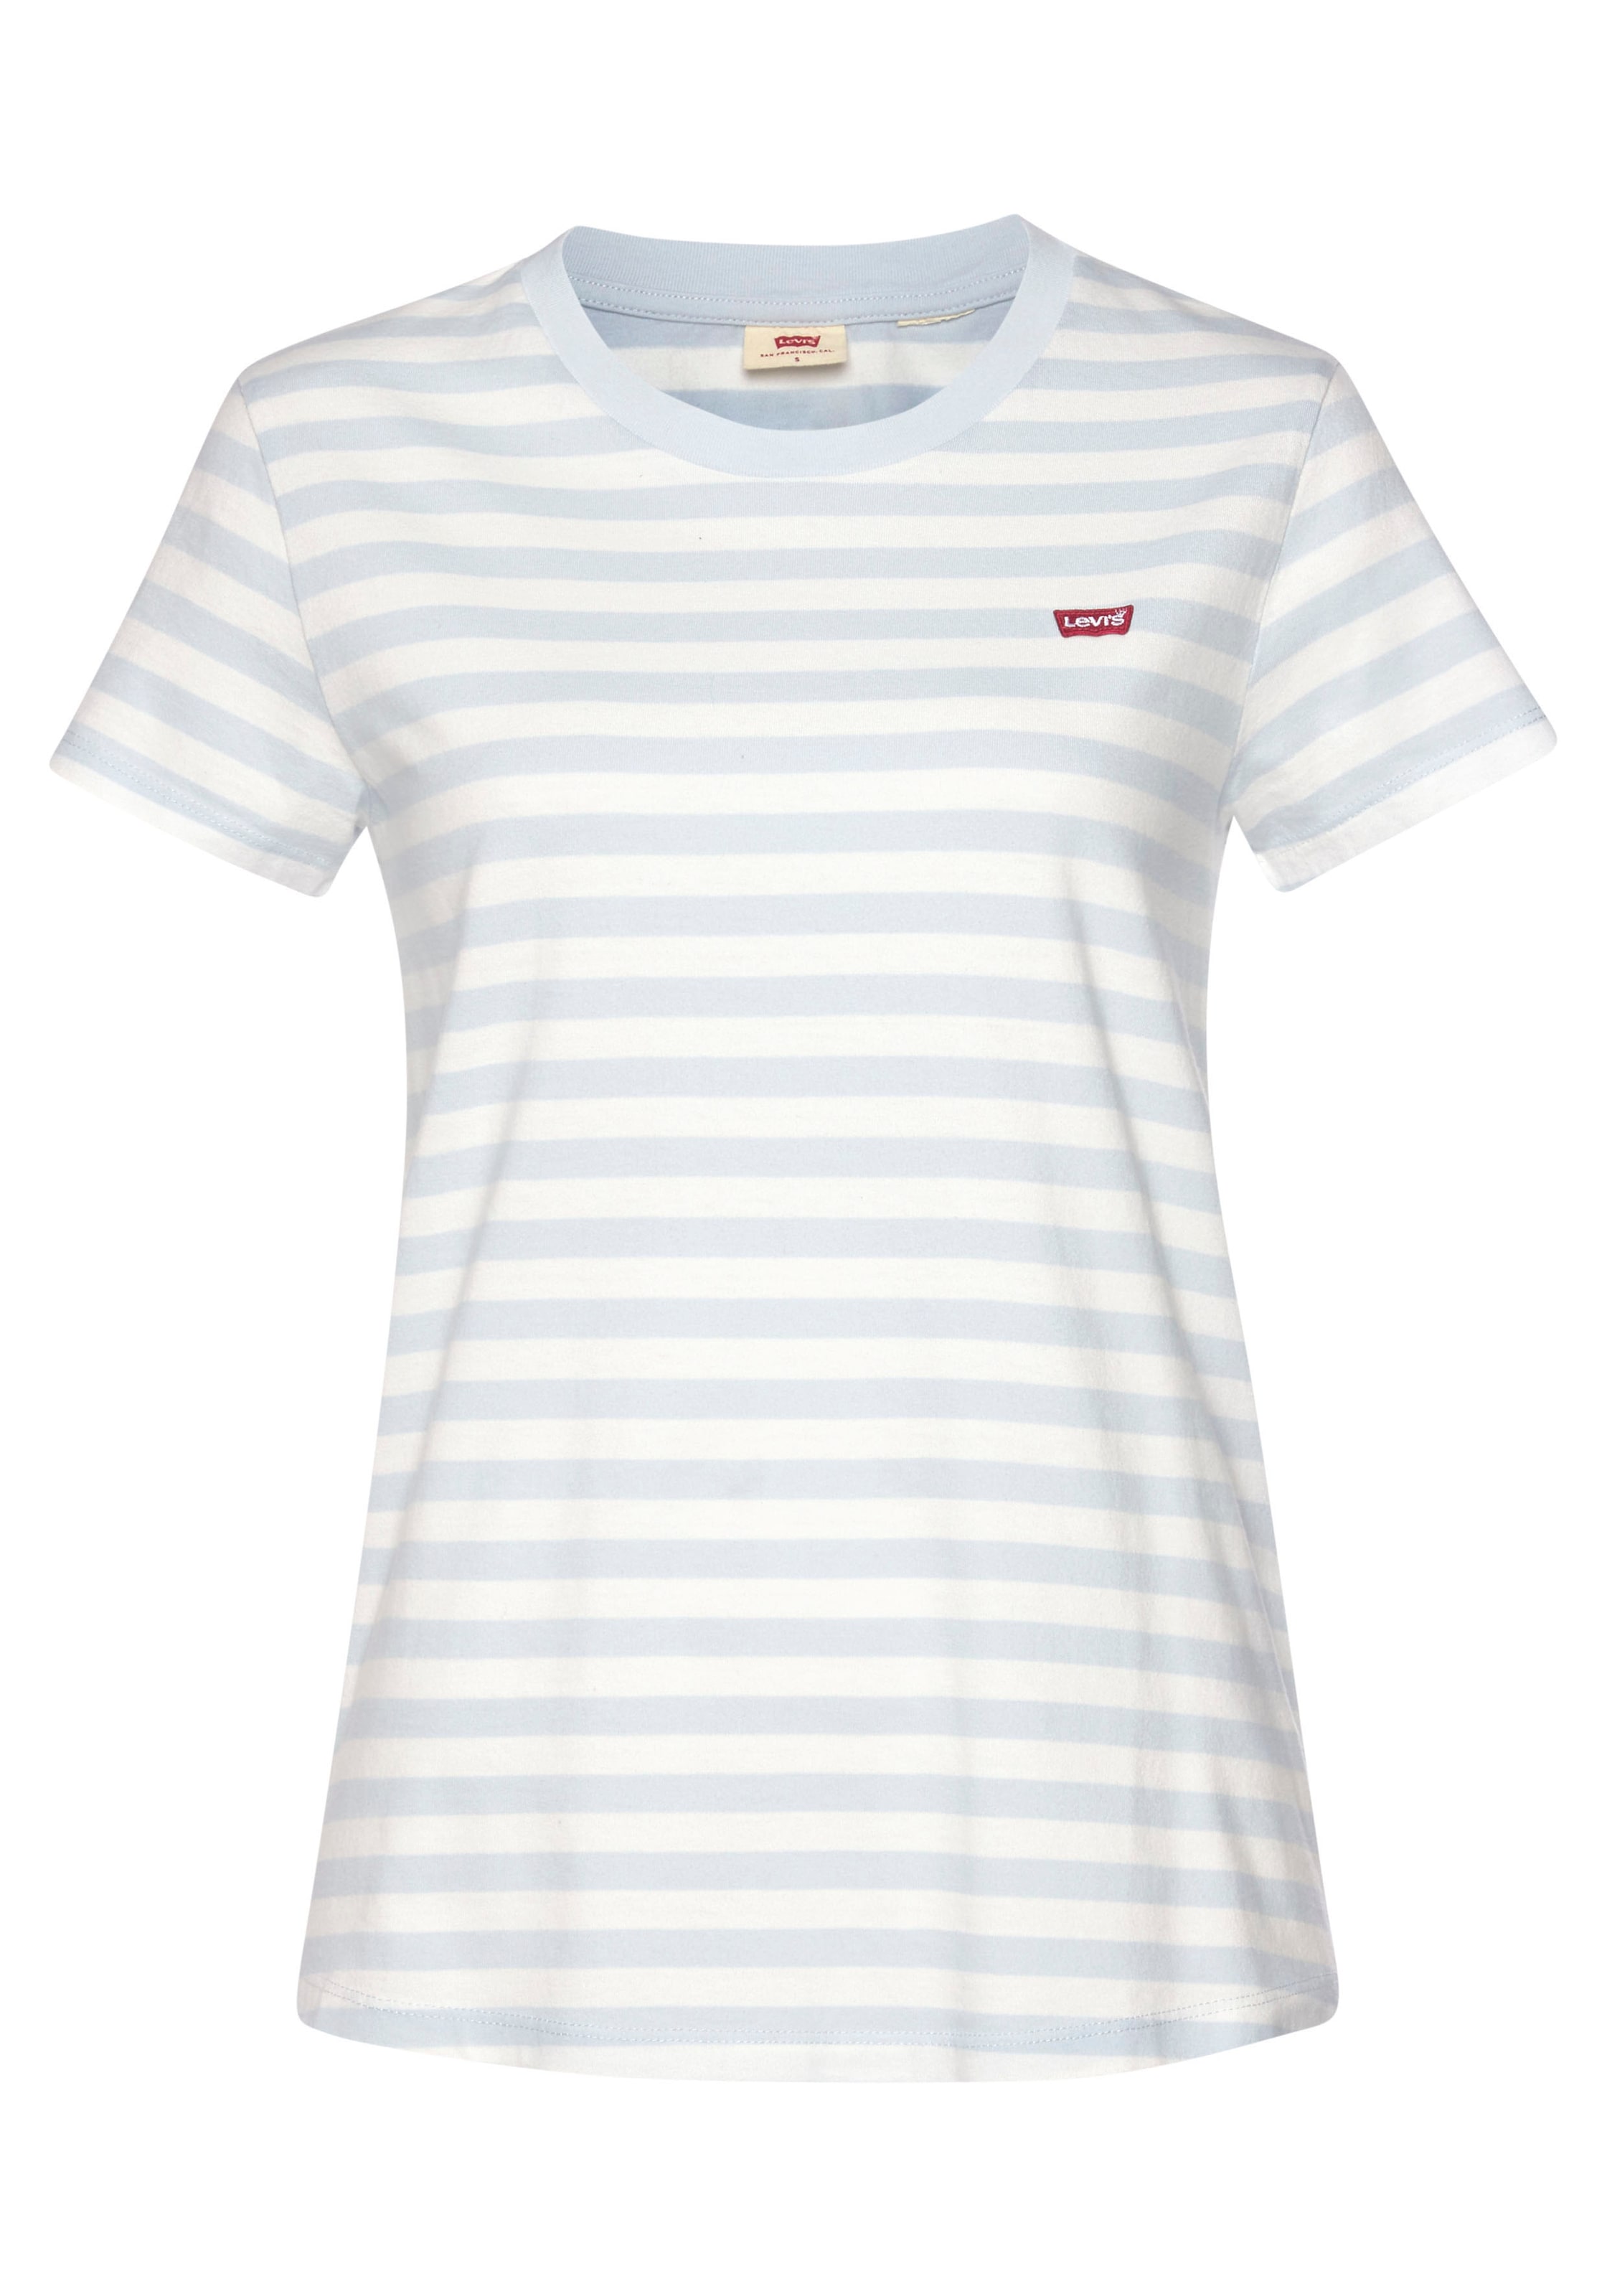 T-shirts et tops T-shirt LEVIS en Bleu Pastel, Blanc 